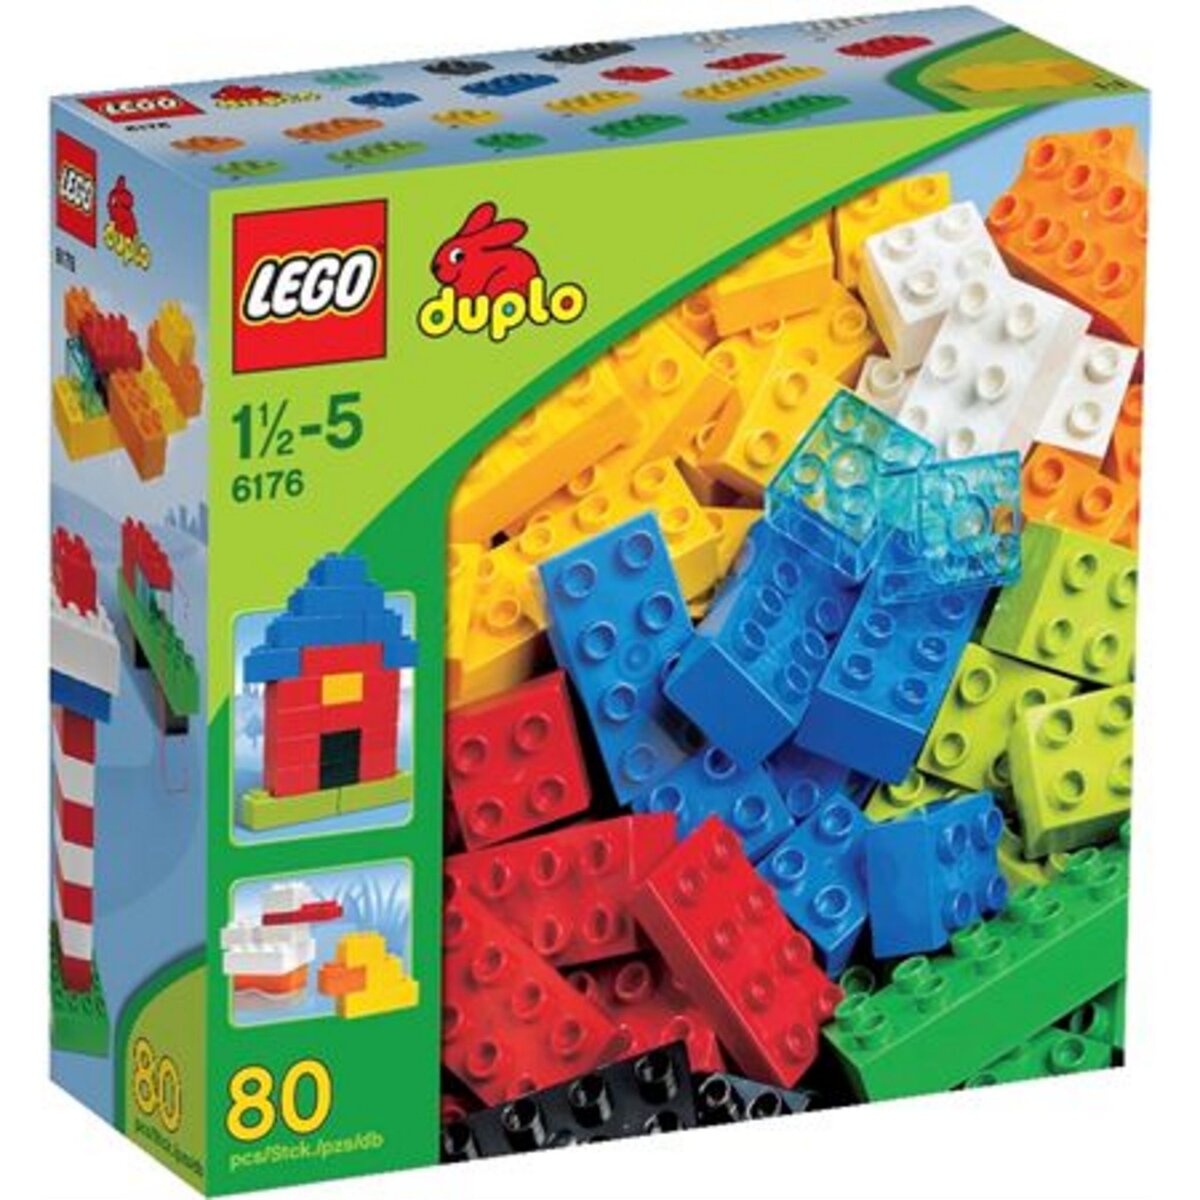 LEGO Duplo 6176 - Boite complément luxe